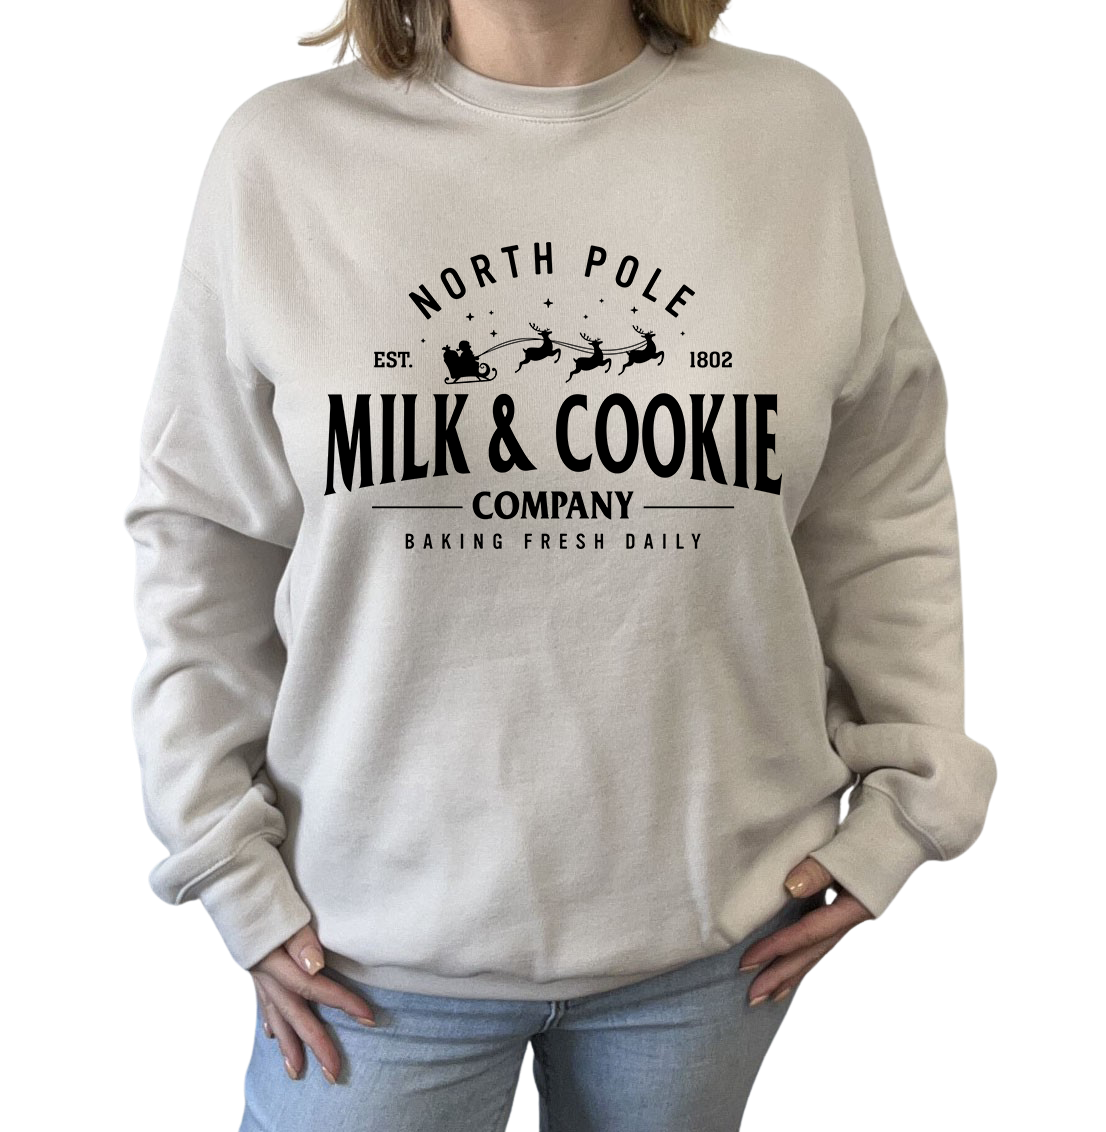 North Pole Milk & Cookie Company Crewneck Sweatshirt - In 3 Colors